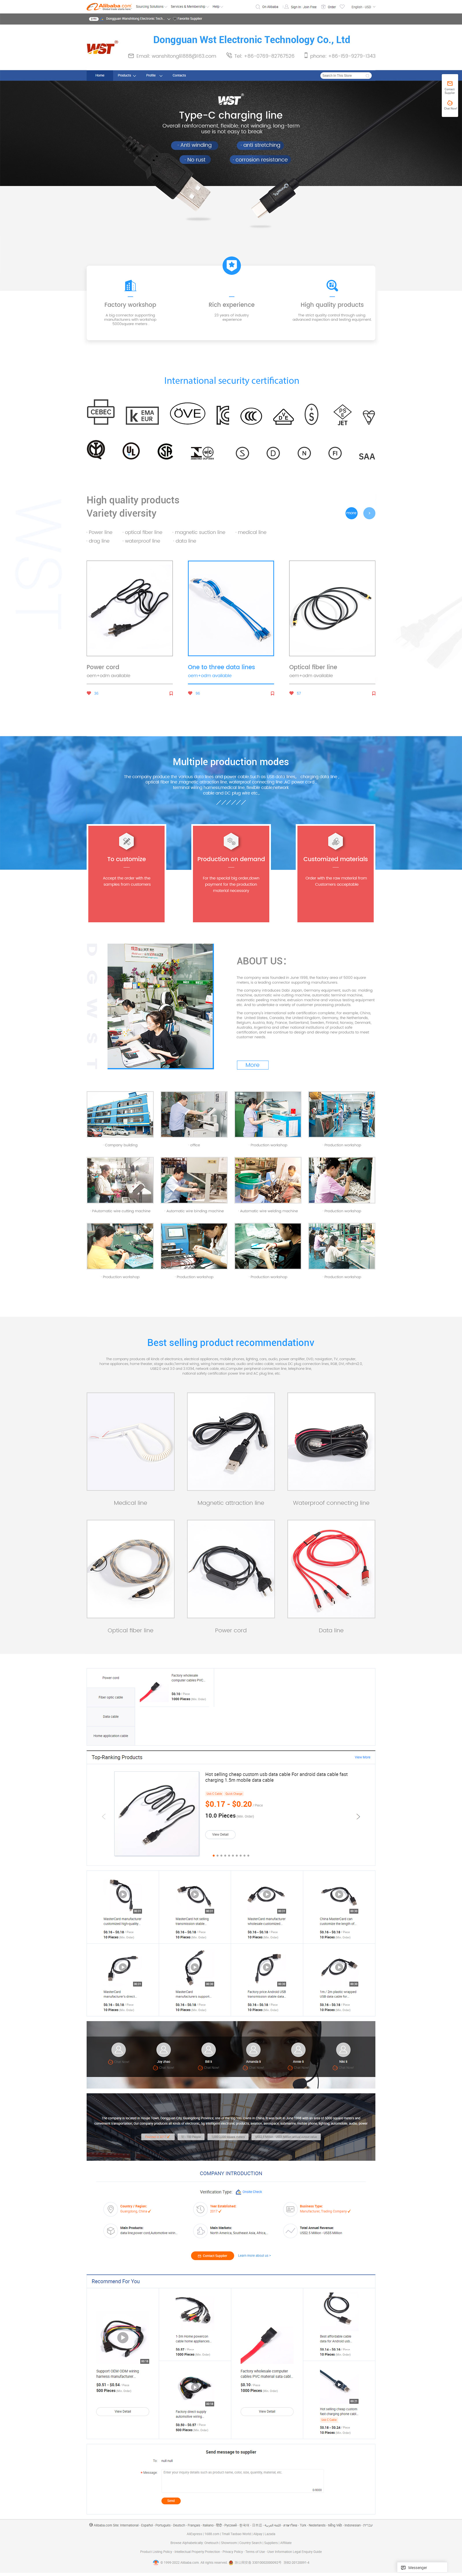 Dongguan-Wanshitong-Electronic-Technology-Co-Ltd-data-line-power-cord